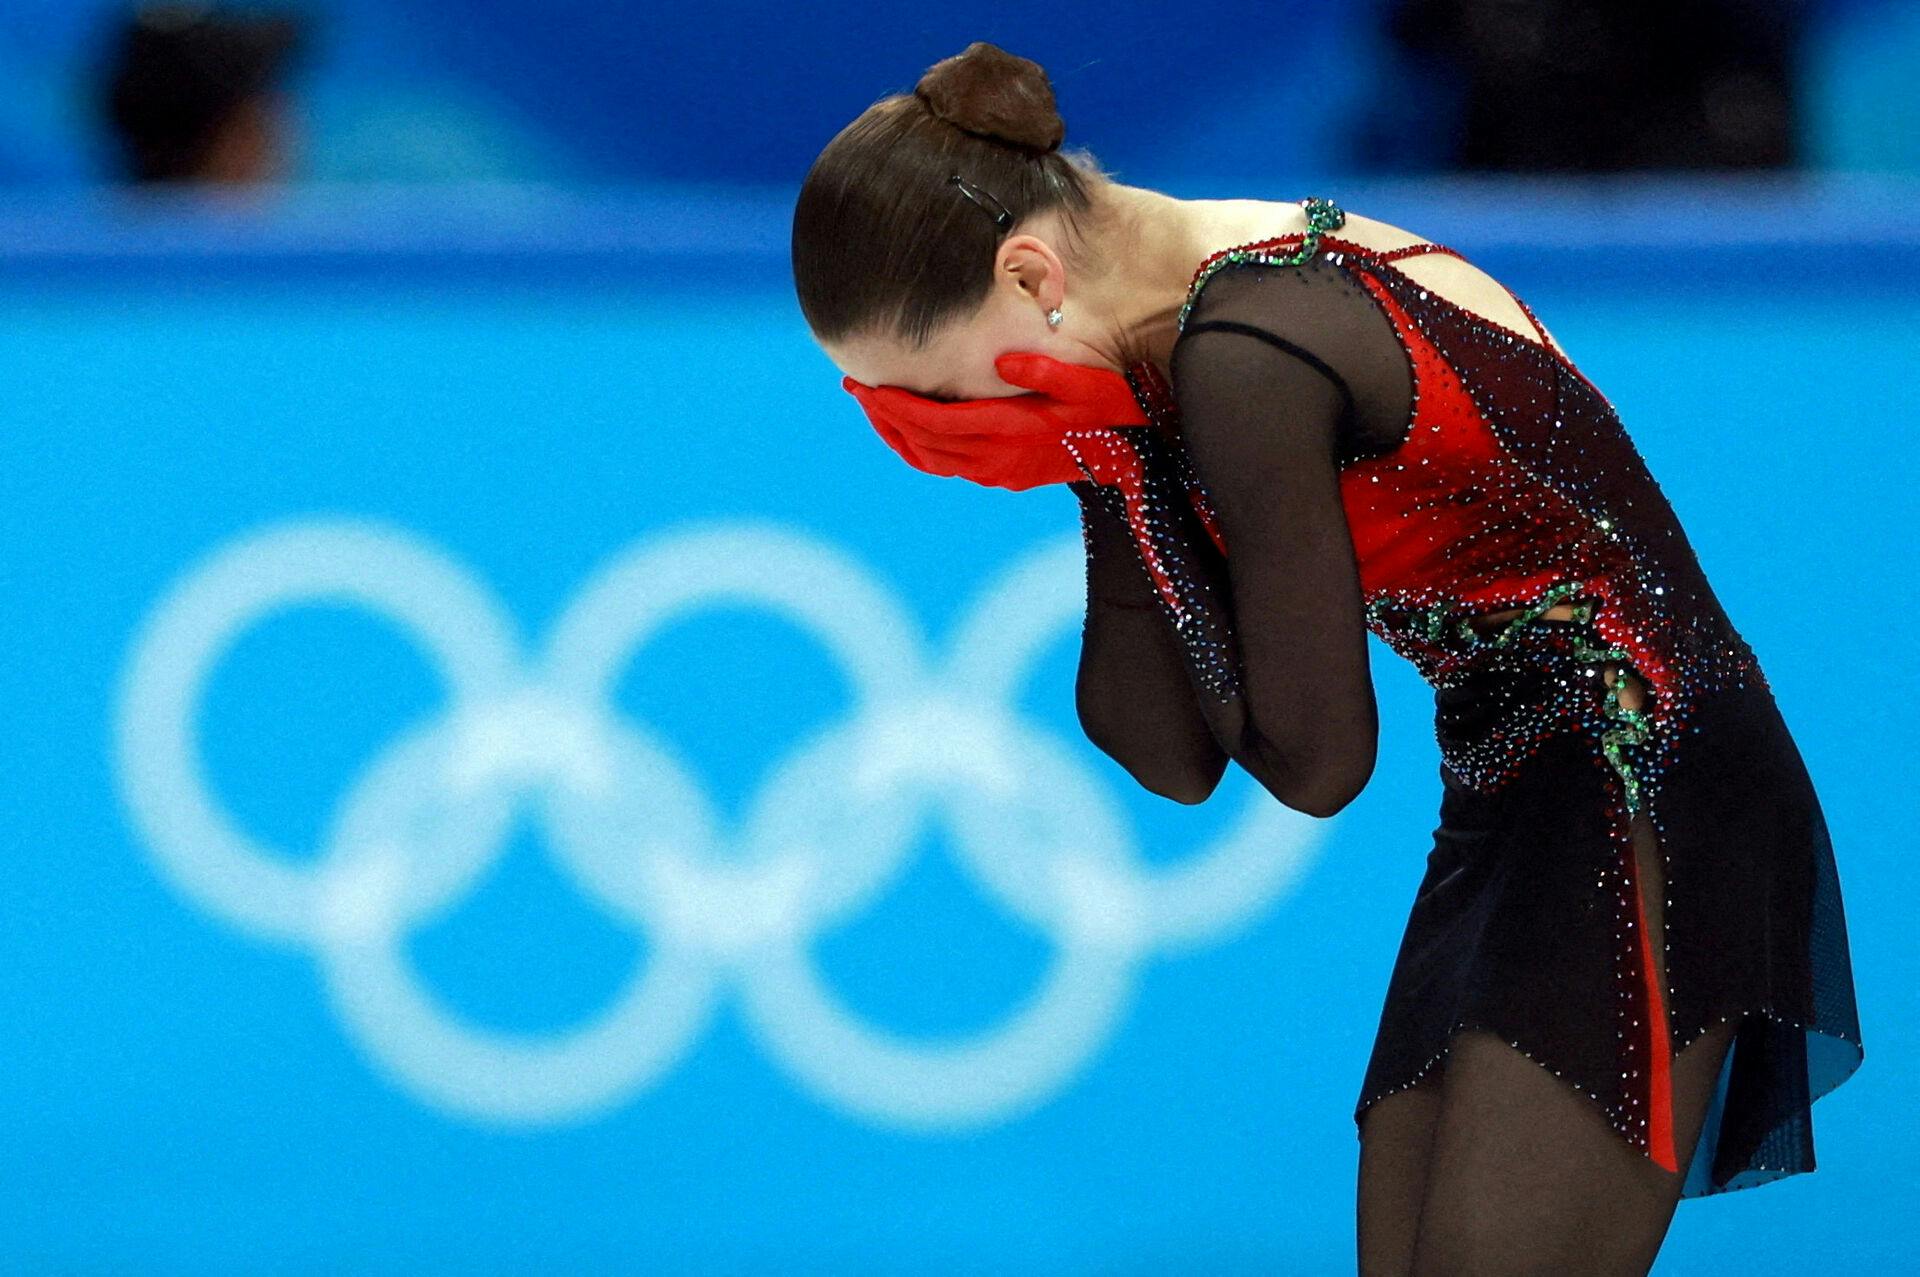 Ol-guldvinderen i kunstskøjteløb, russiske Kamila Valieva, får fire års karantæne for at have brudt reglerne for doping.